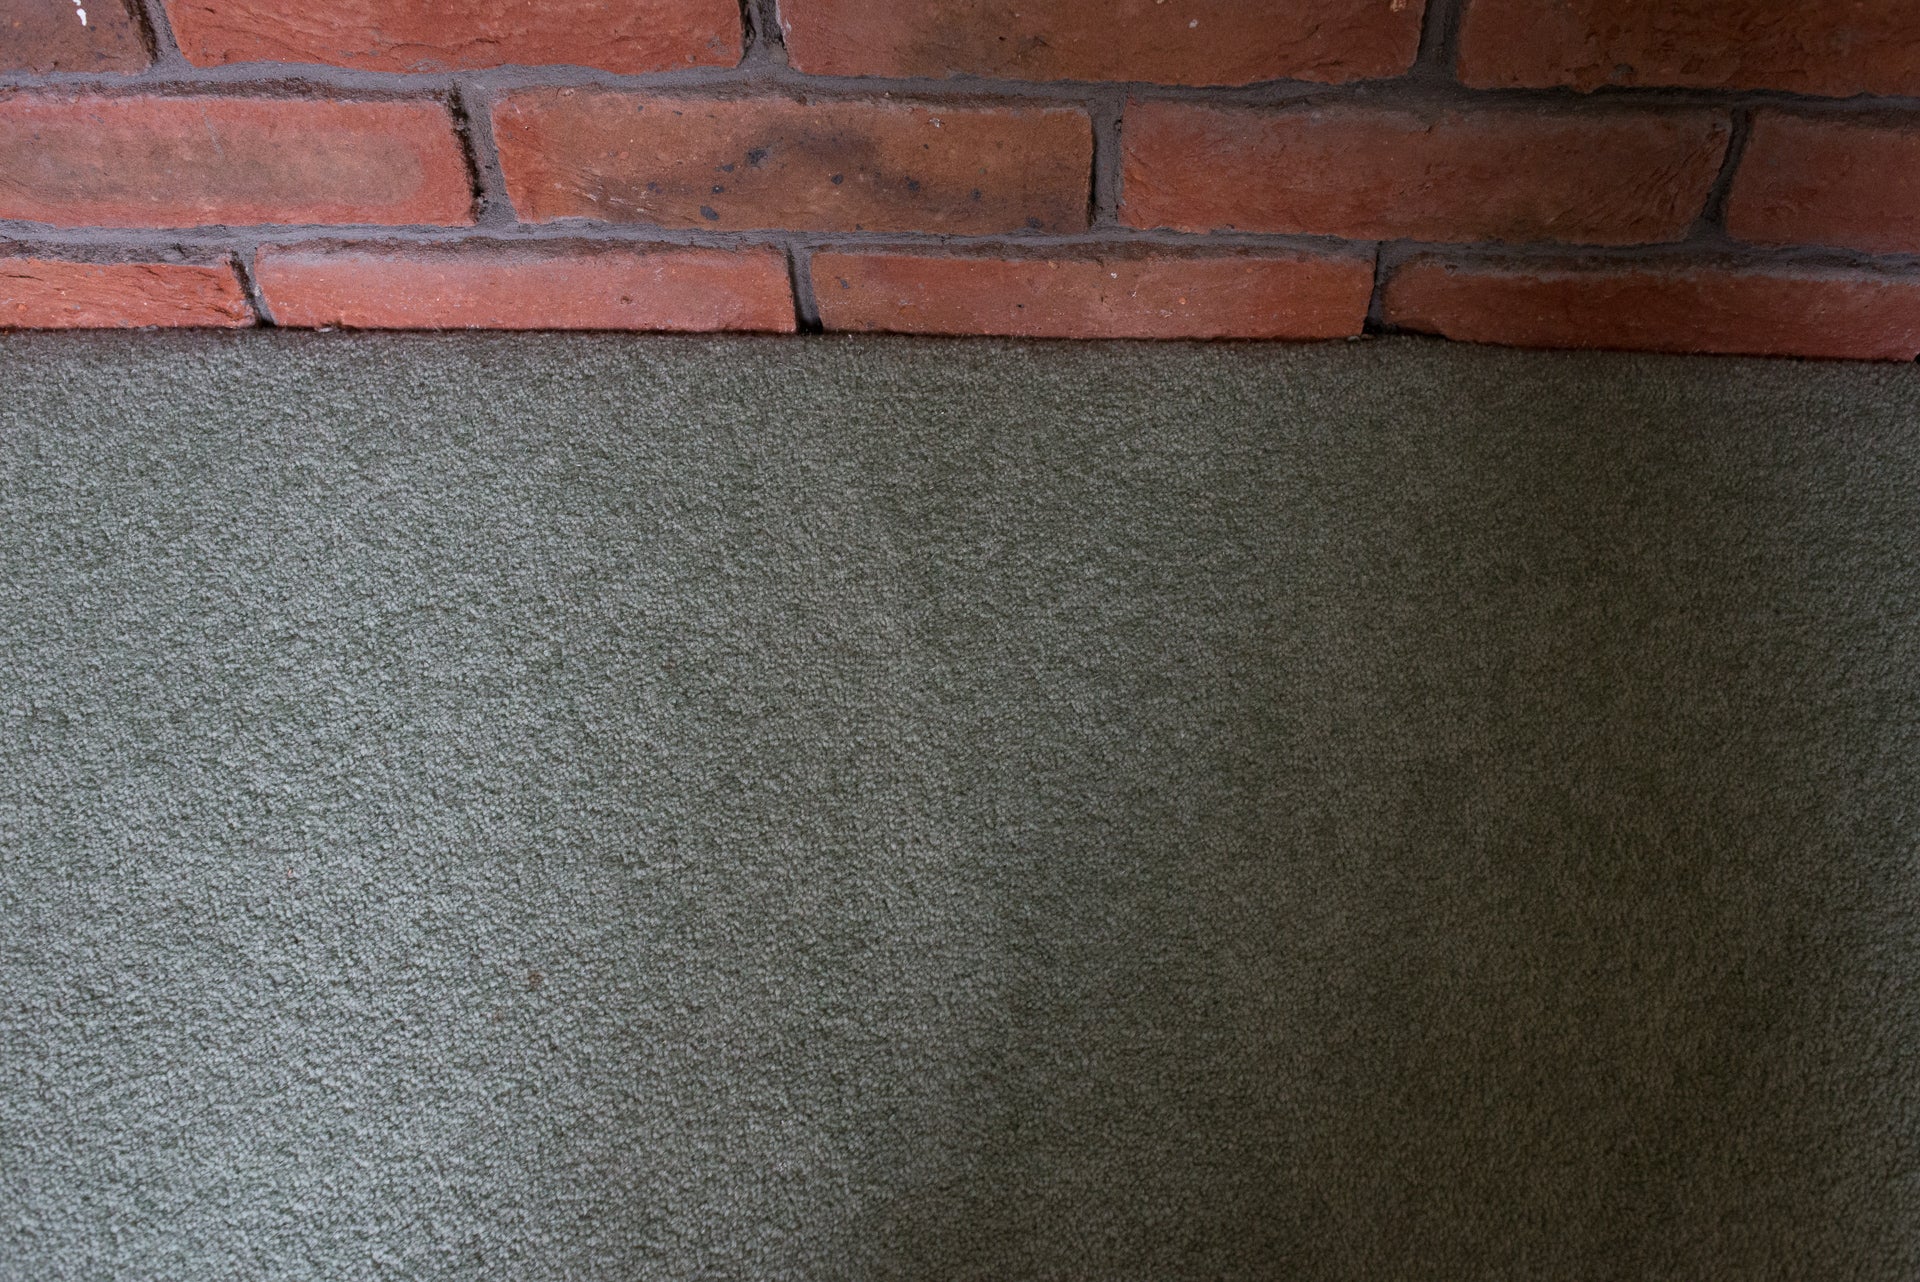 Green carpet and brick wall, no visible product.